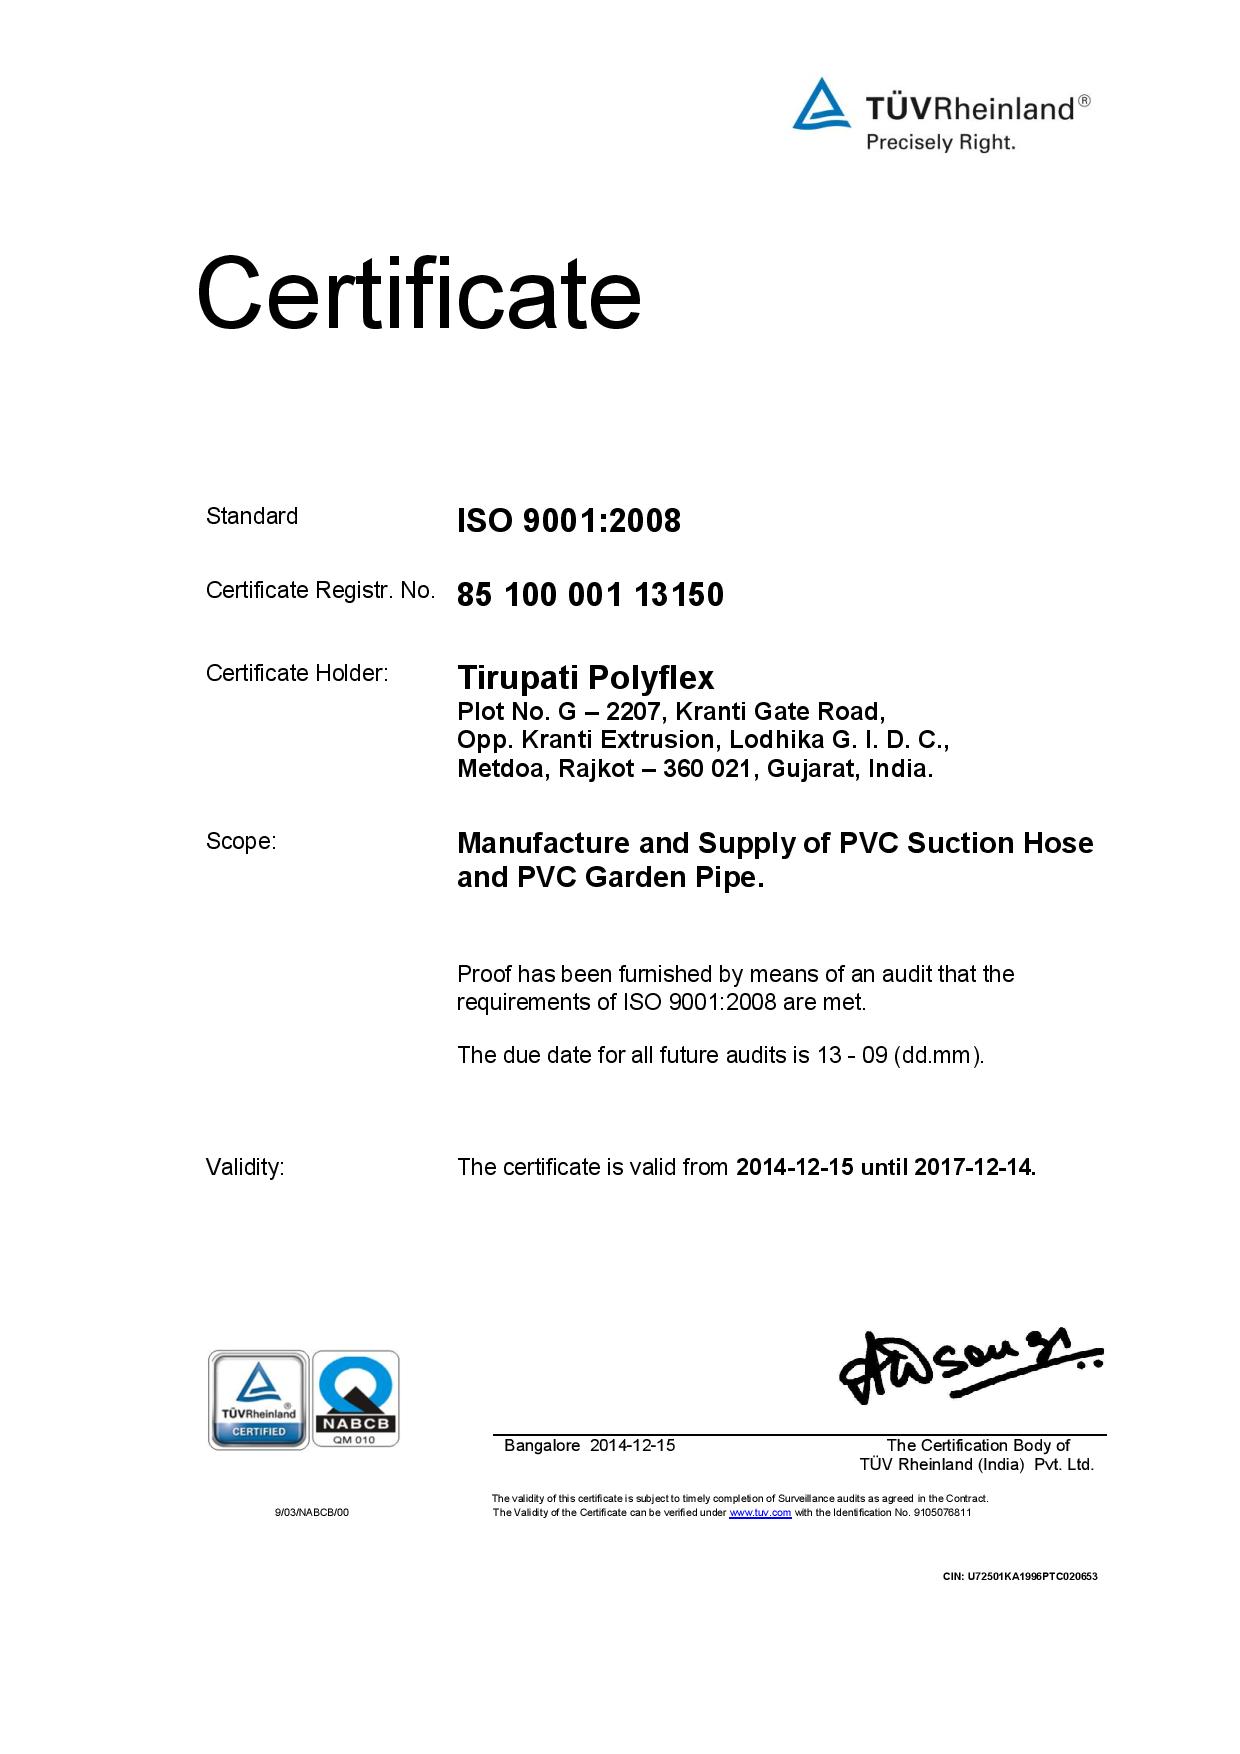 TUV certificate